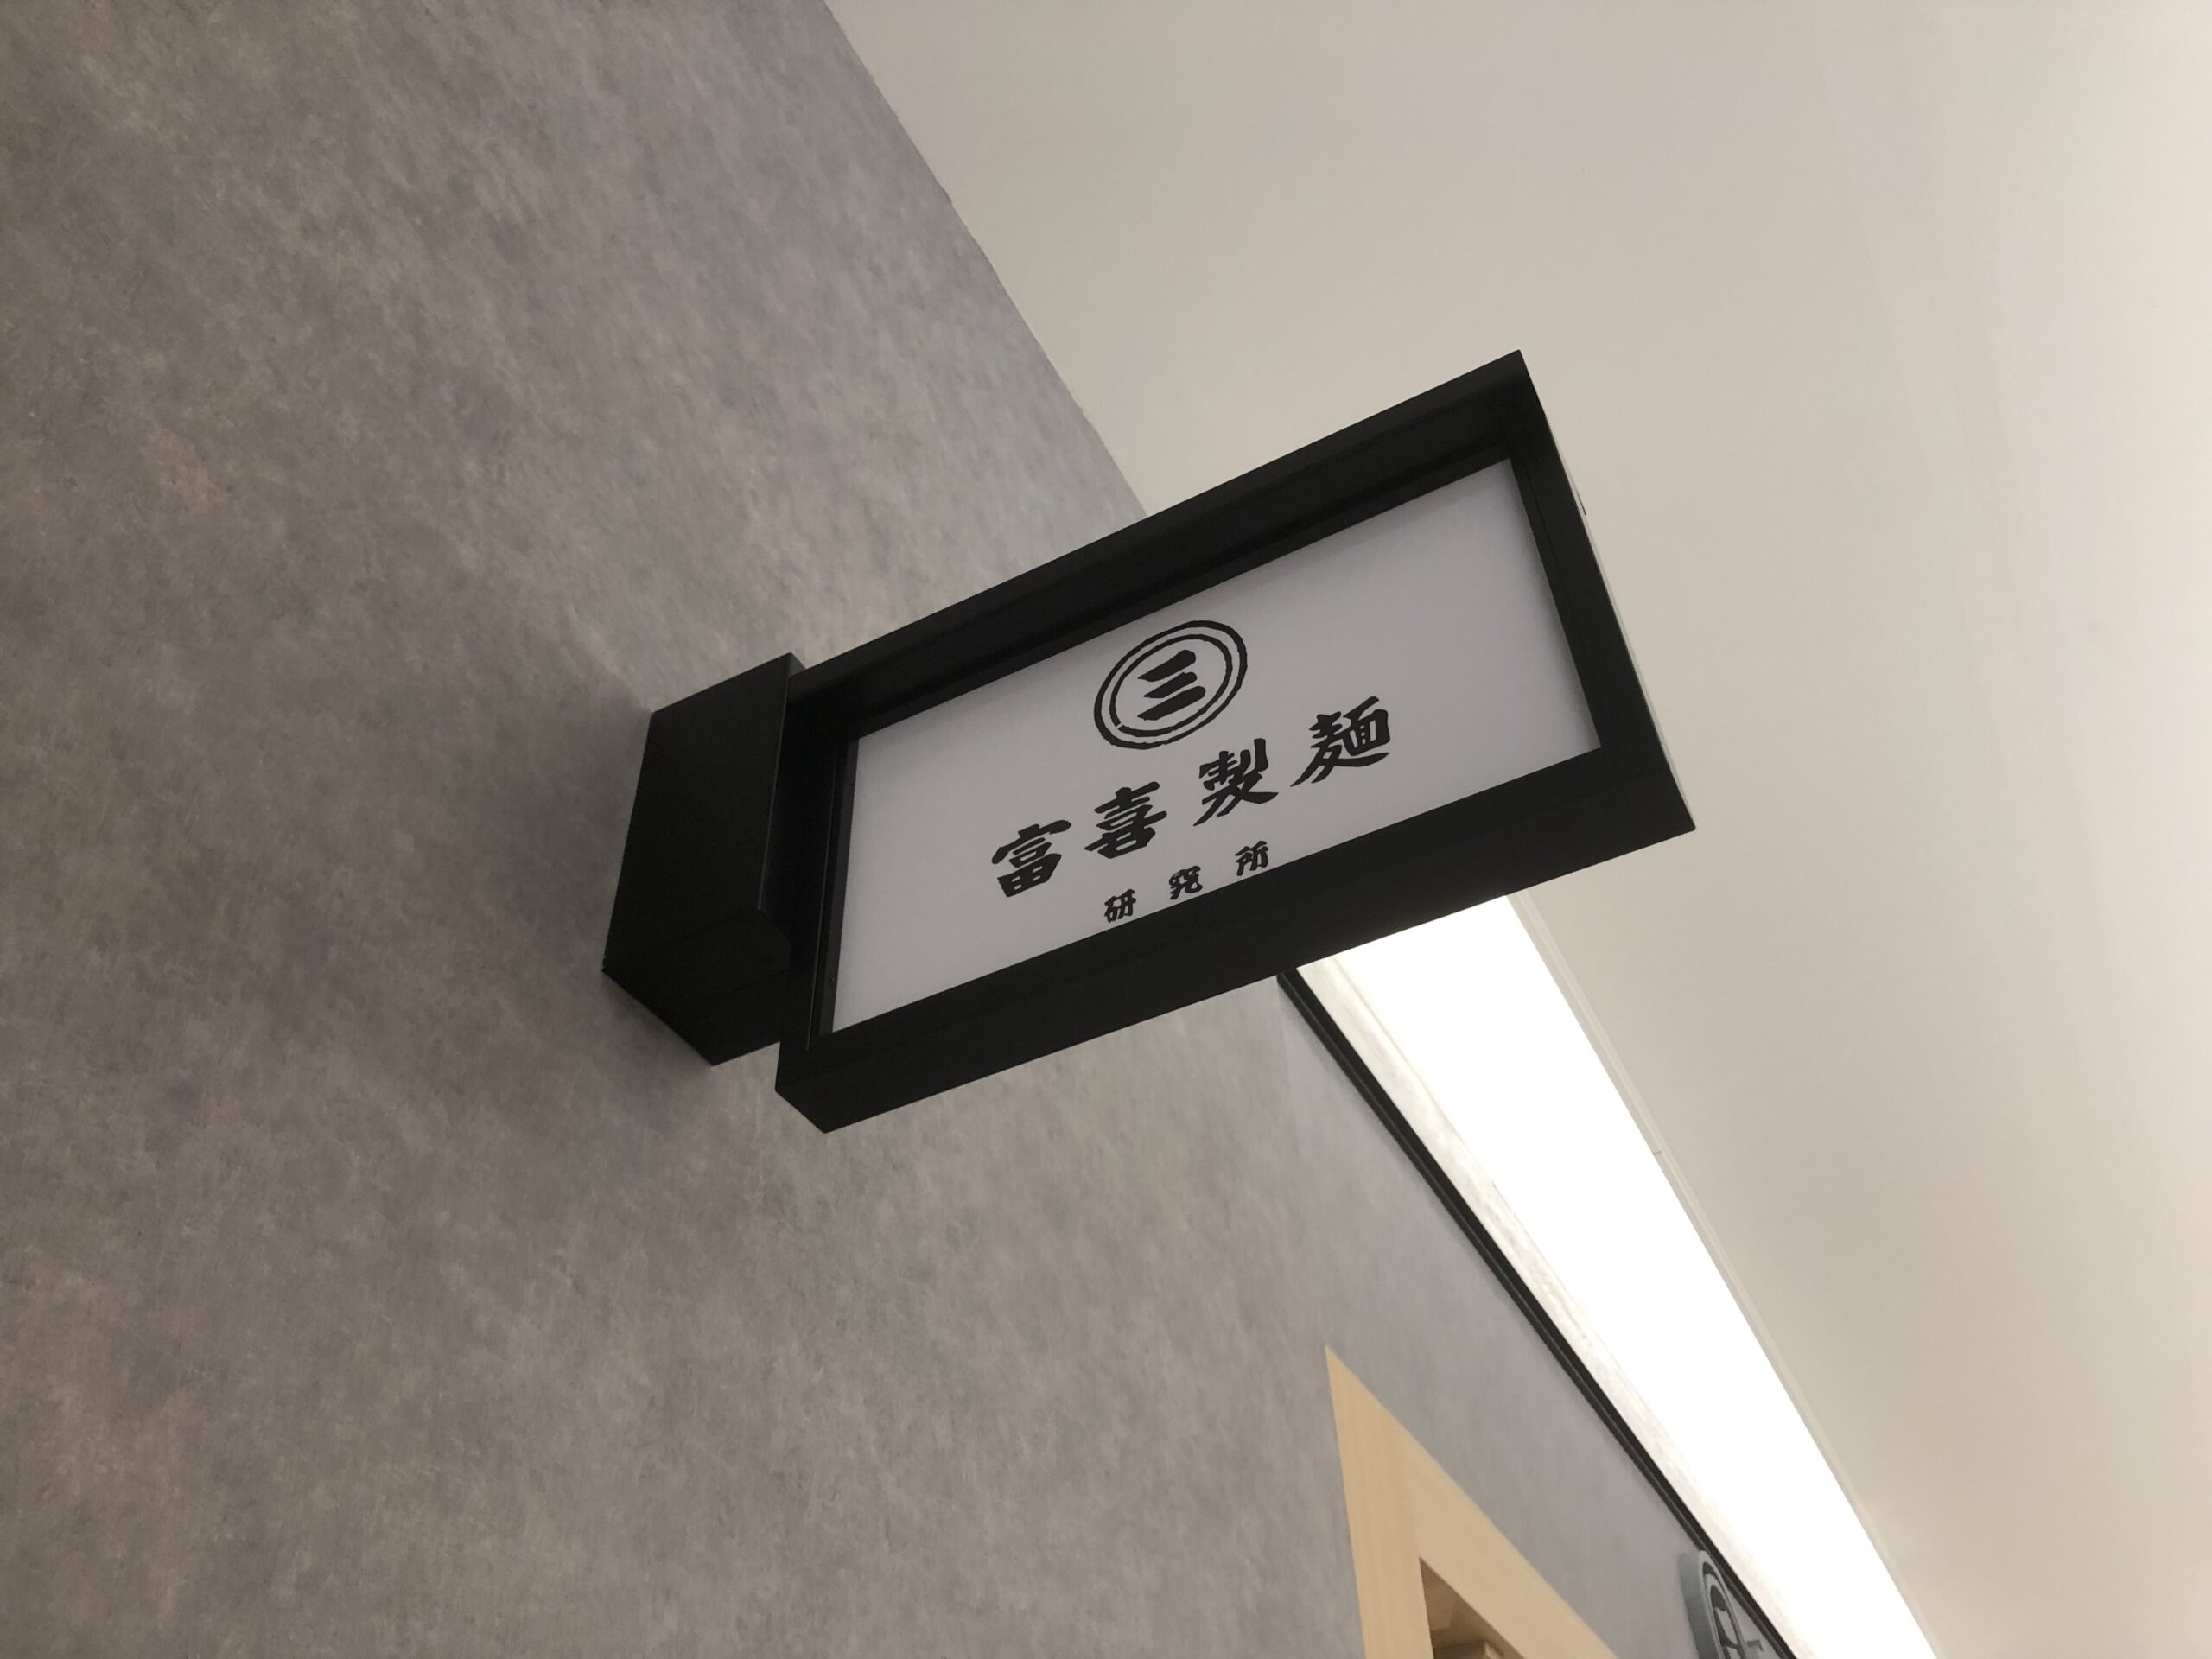 富喜製麺研究所